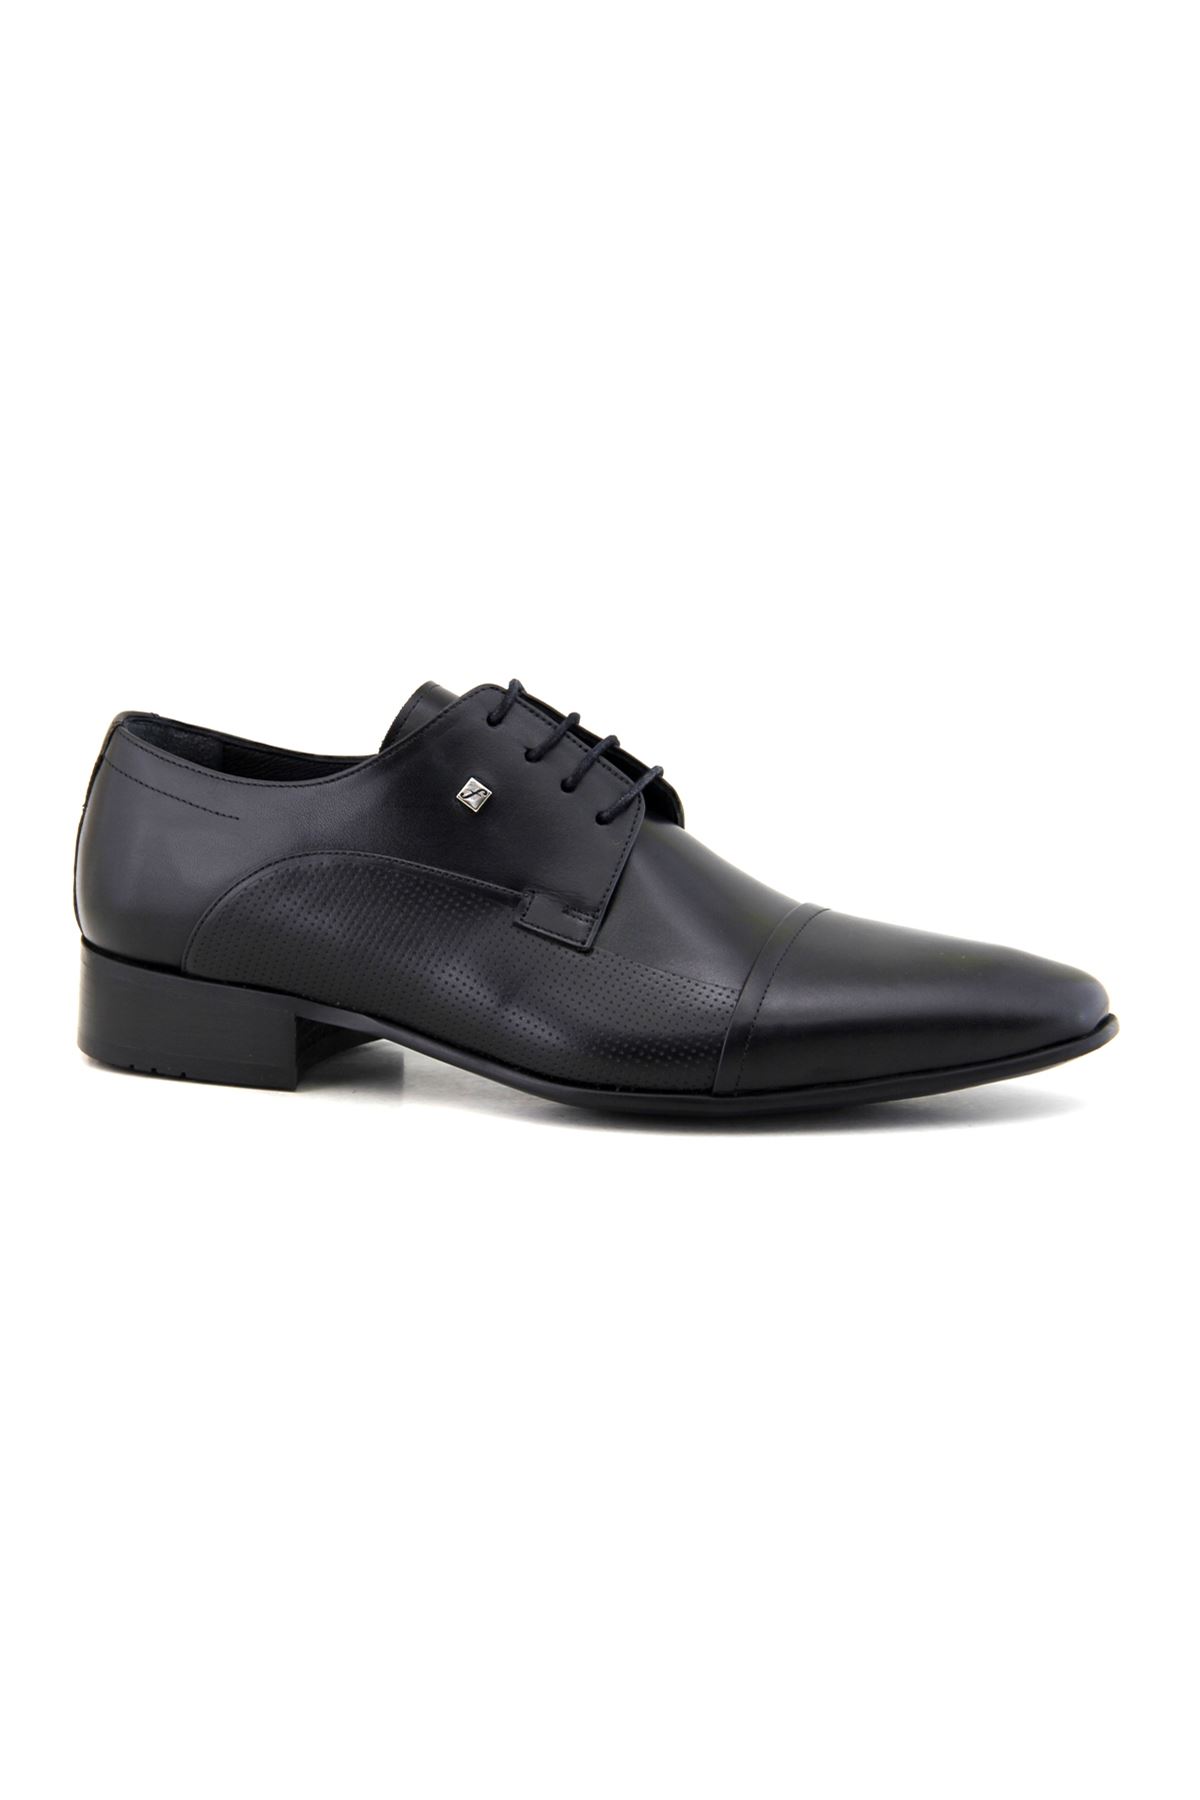 Fosco 2239 Hakiki Deri Klasik Erkek Ayakkabı - Siyah